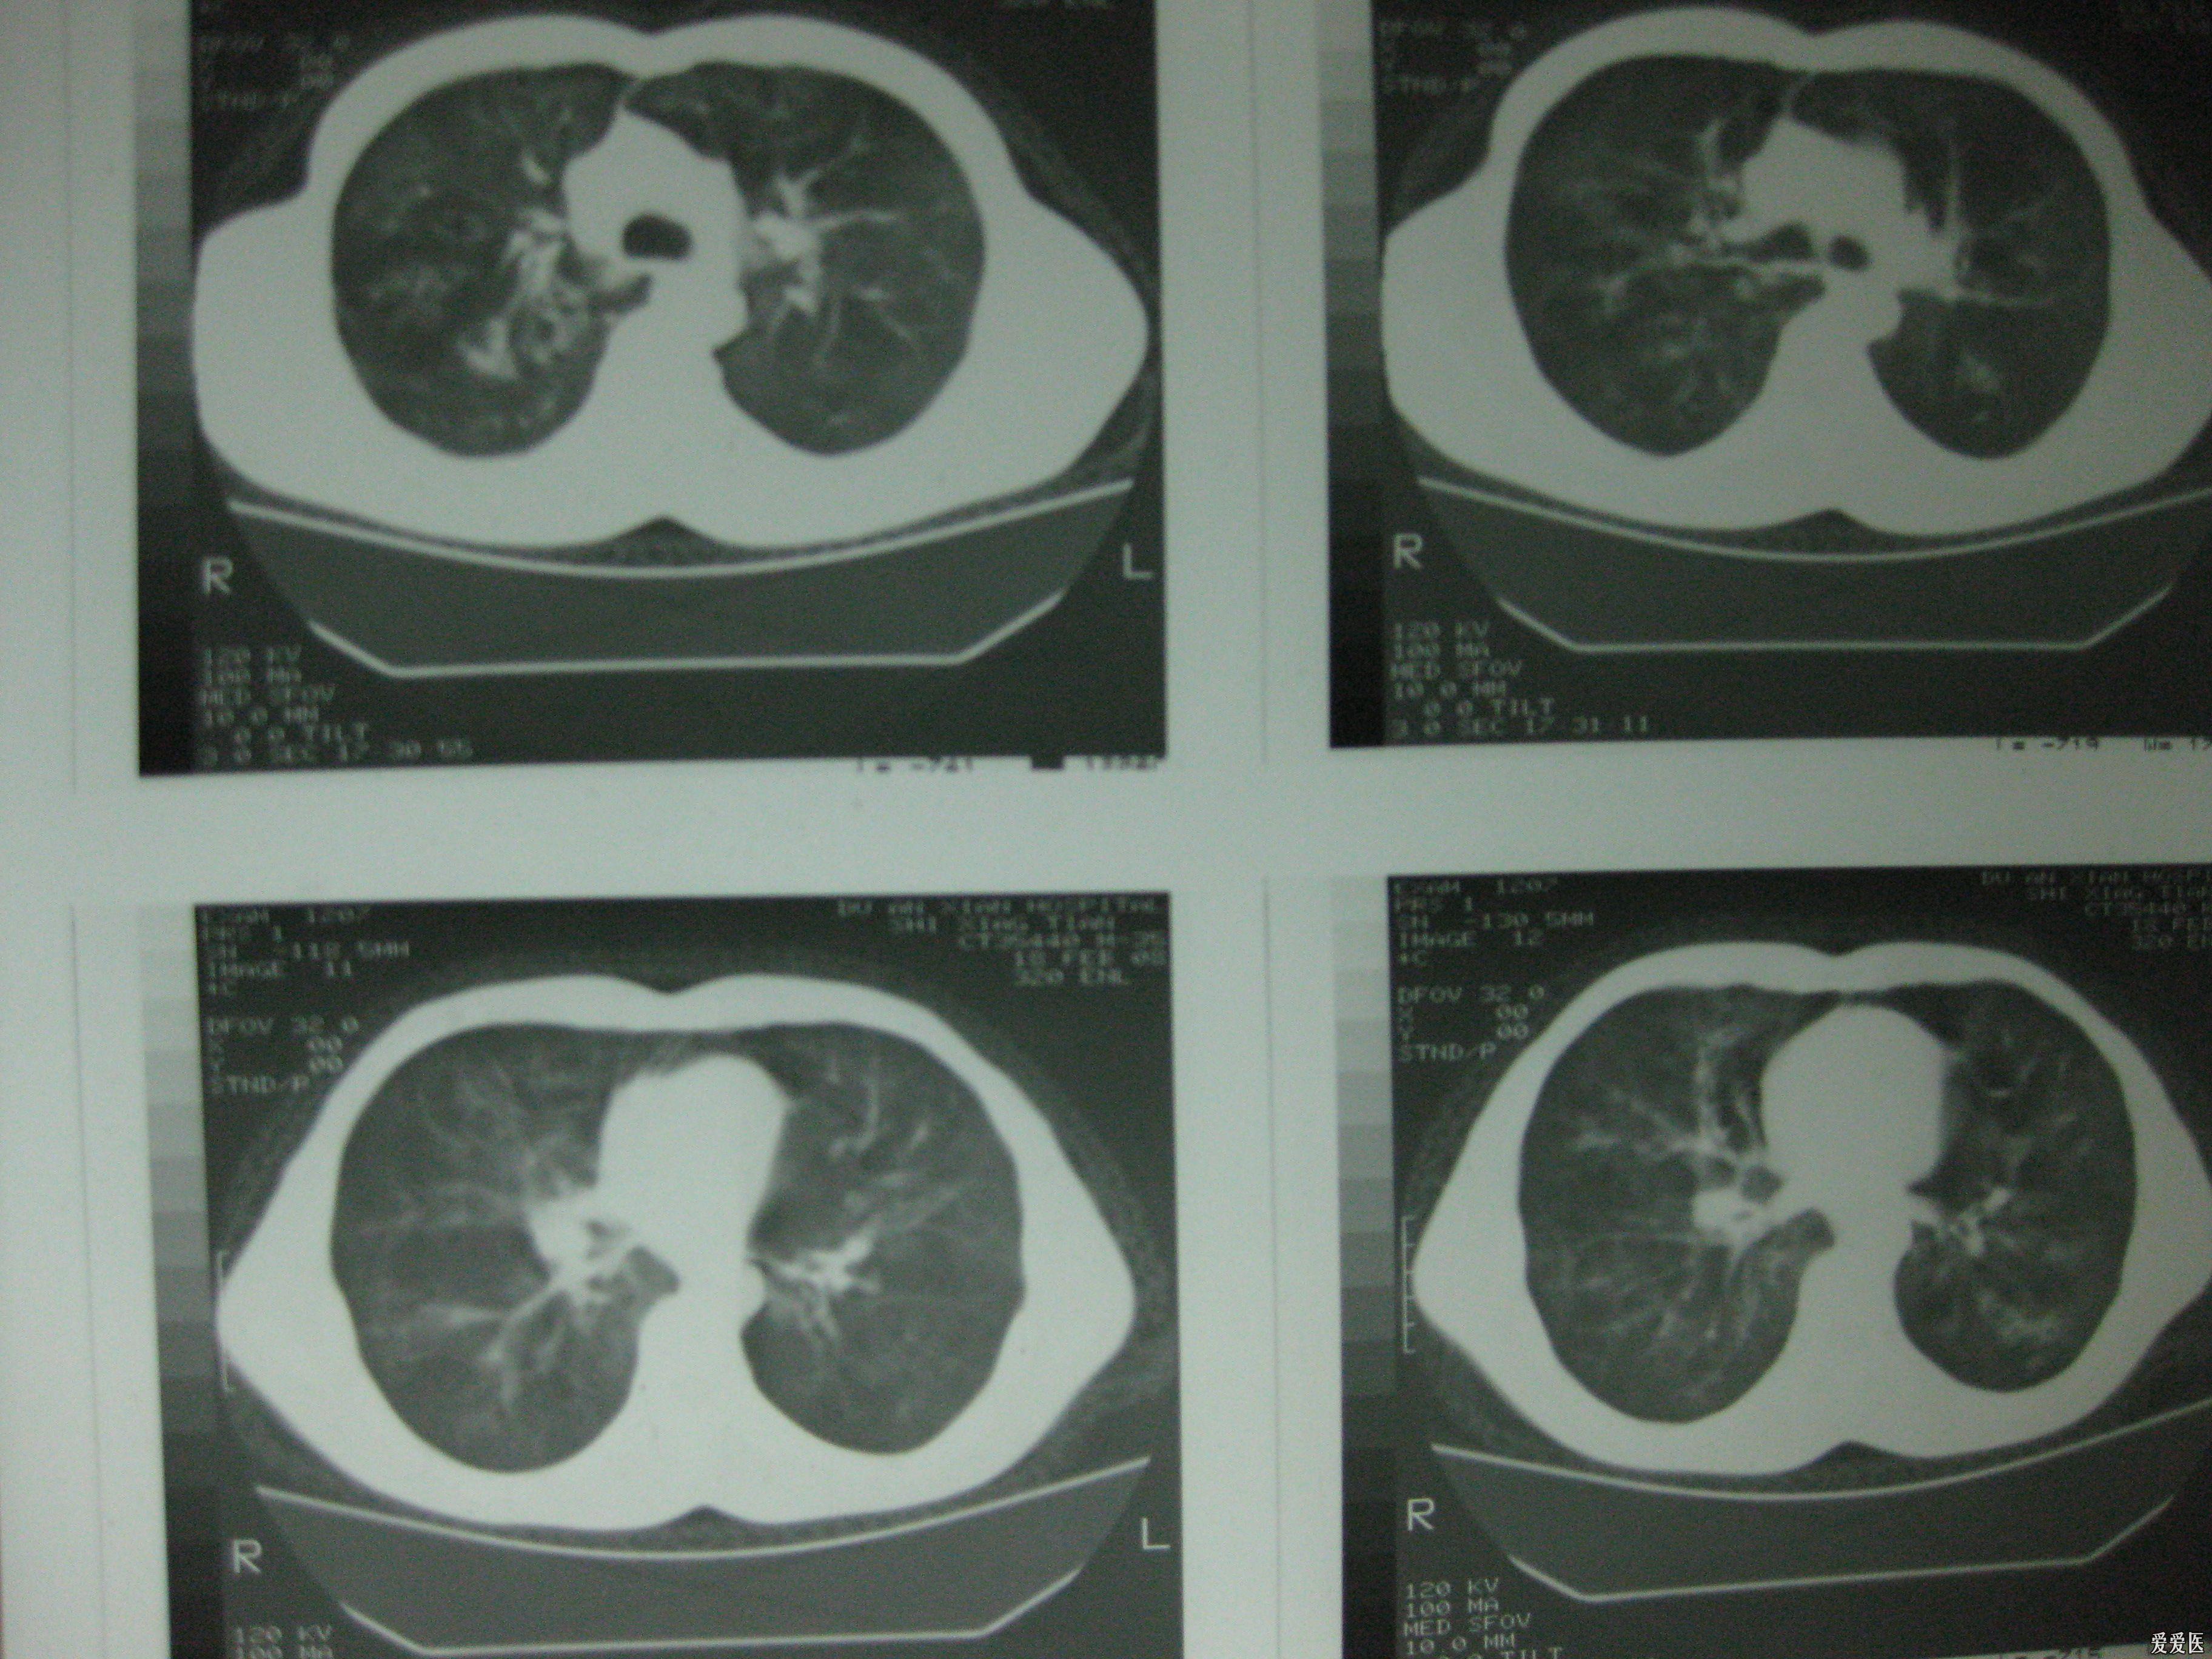 肺实质结节或肿块病灶，53张影像汇集！│以影识病_肺实质结节_肿块_影像_医脉通